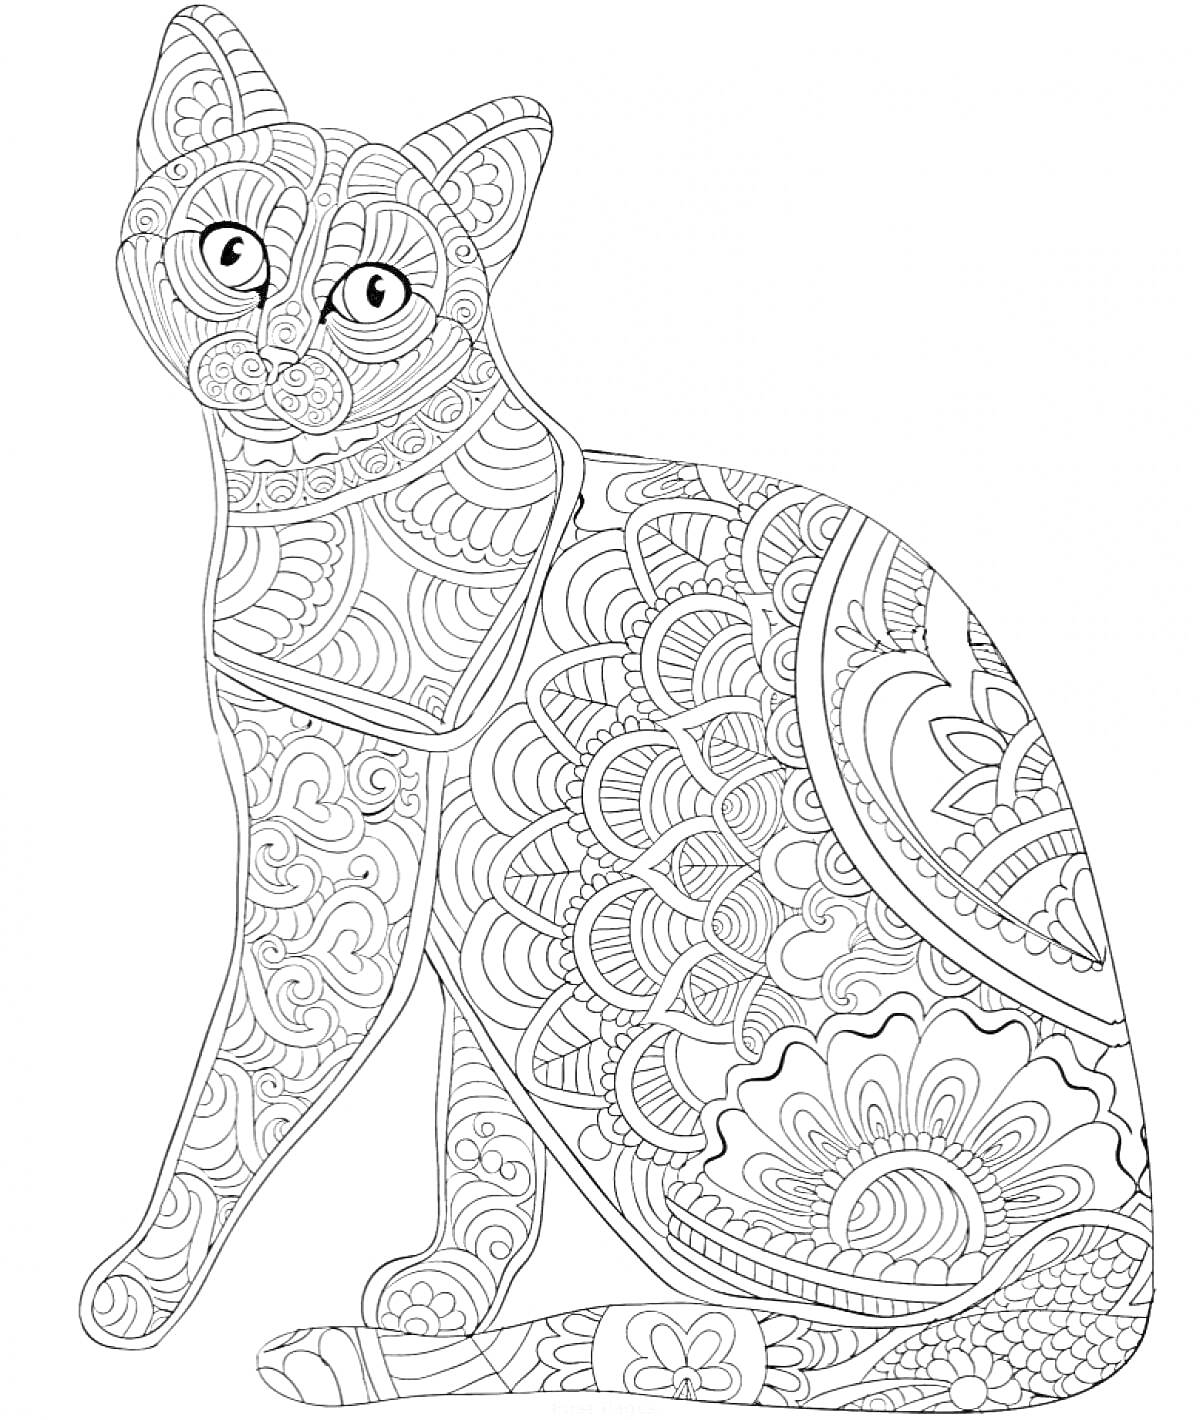 Раскраска Антистресс раскраска с кошкой, со сложными узорами, включающими завитки, цветочные элементы и геометрические фигуры